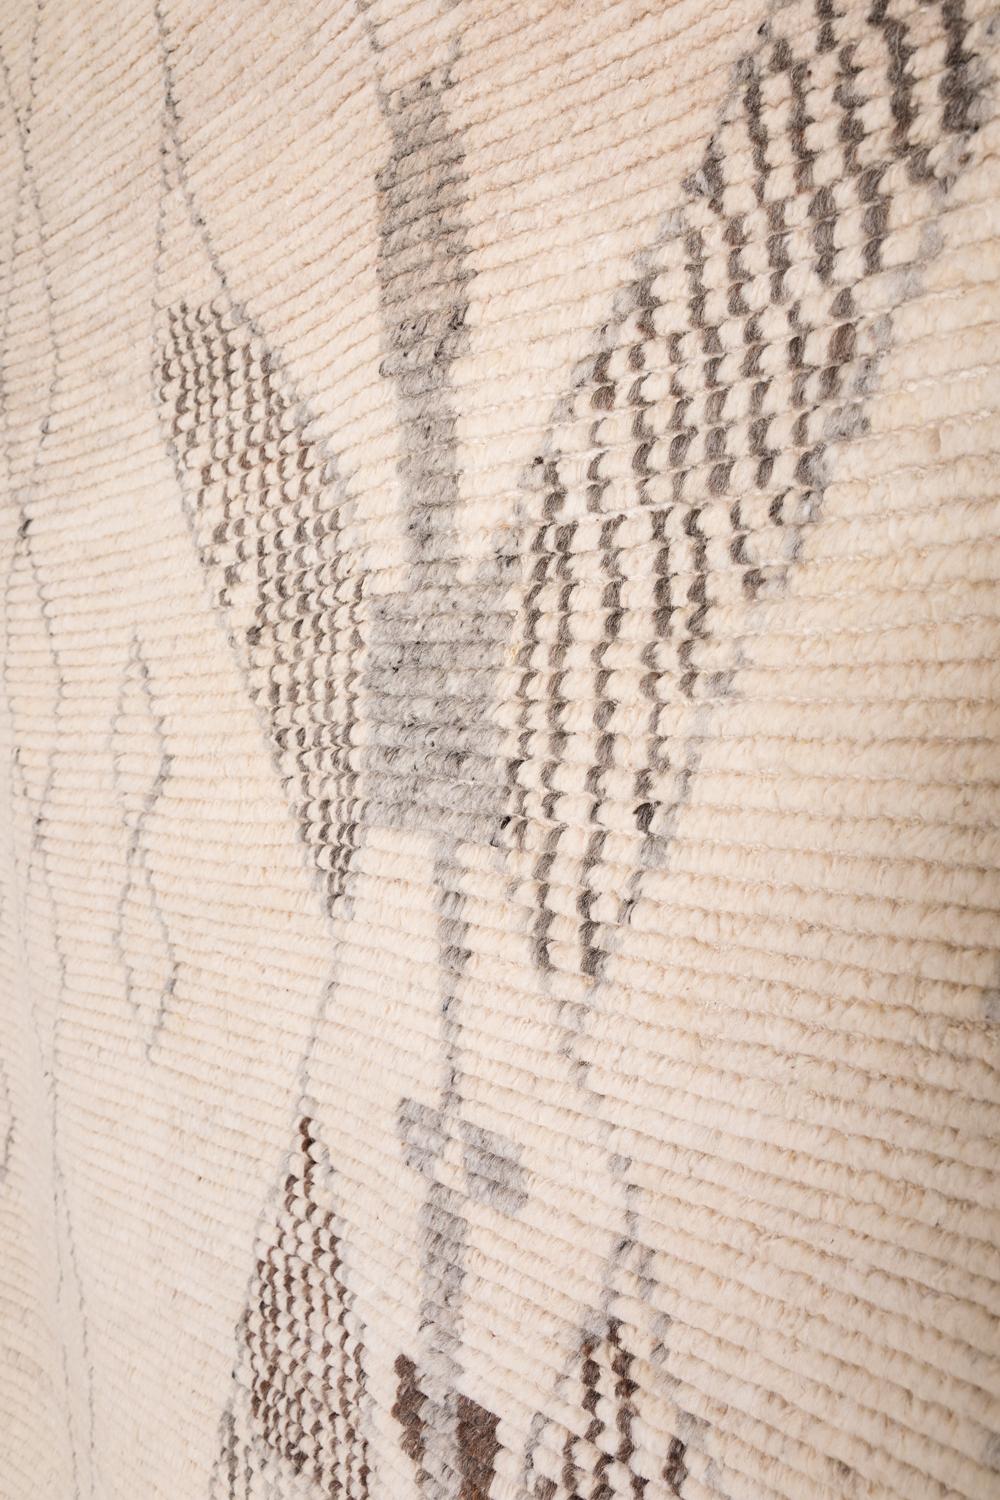 Dieser Teppich wurde von Kunsthandwerkern in Nordindien aus den feinsten Wollgarnen mit einer Dicke von 10 mm von Hand geknüpft.
Jeder Teppich wird mit unregelmäßigen Details handgeknüpft, um schöne Unregelmäßigkeiten zu erzeugen, die jeden Teppich